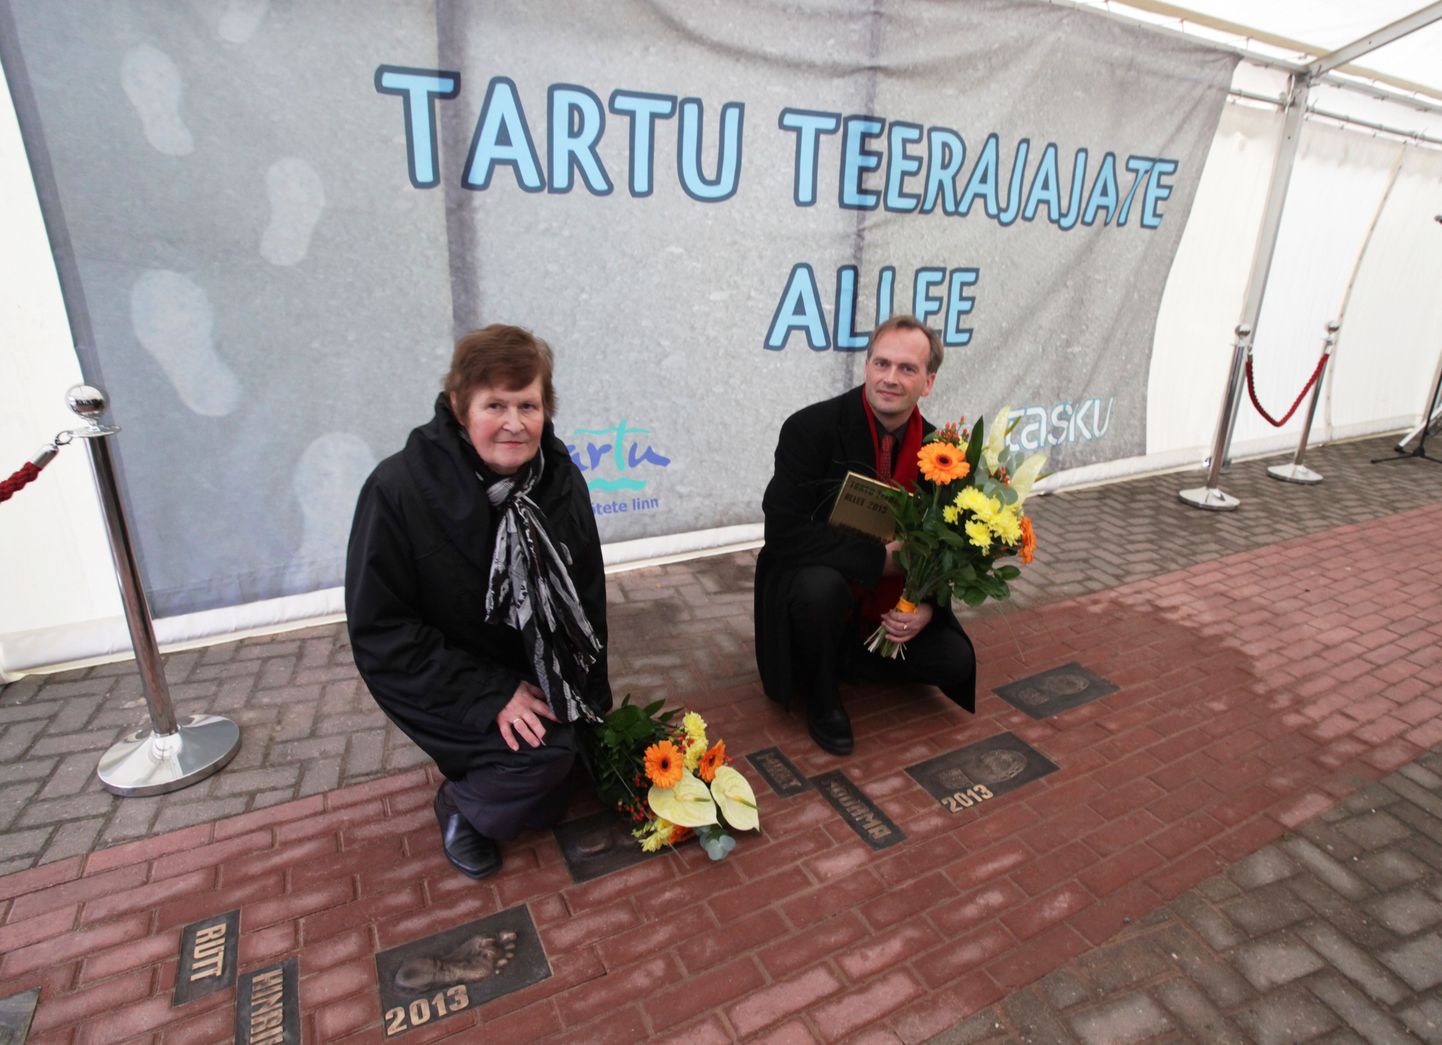 Täna avati Tasku keskuse juures asuval teerajate alleel uued jalajäljed (pildil vasakult Rutt Hinrikus ja Mart Noorma).